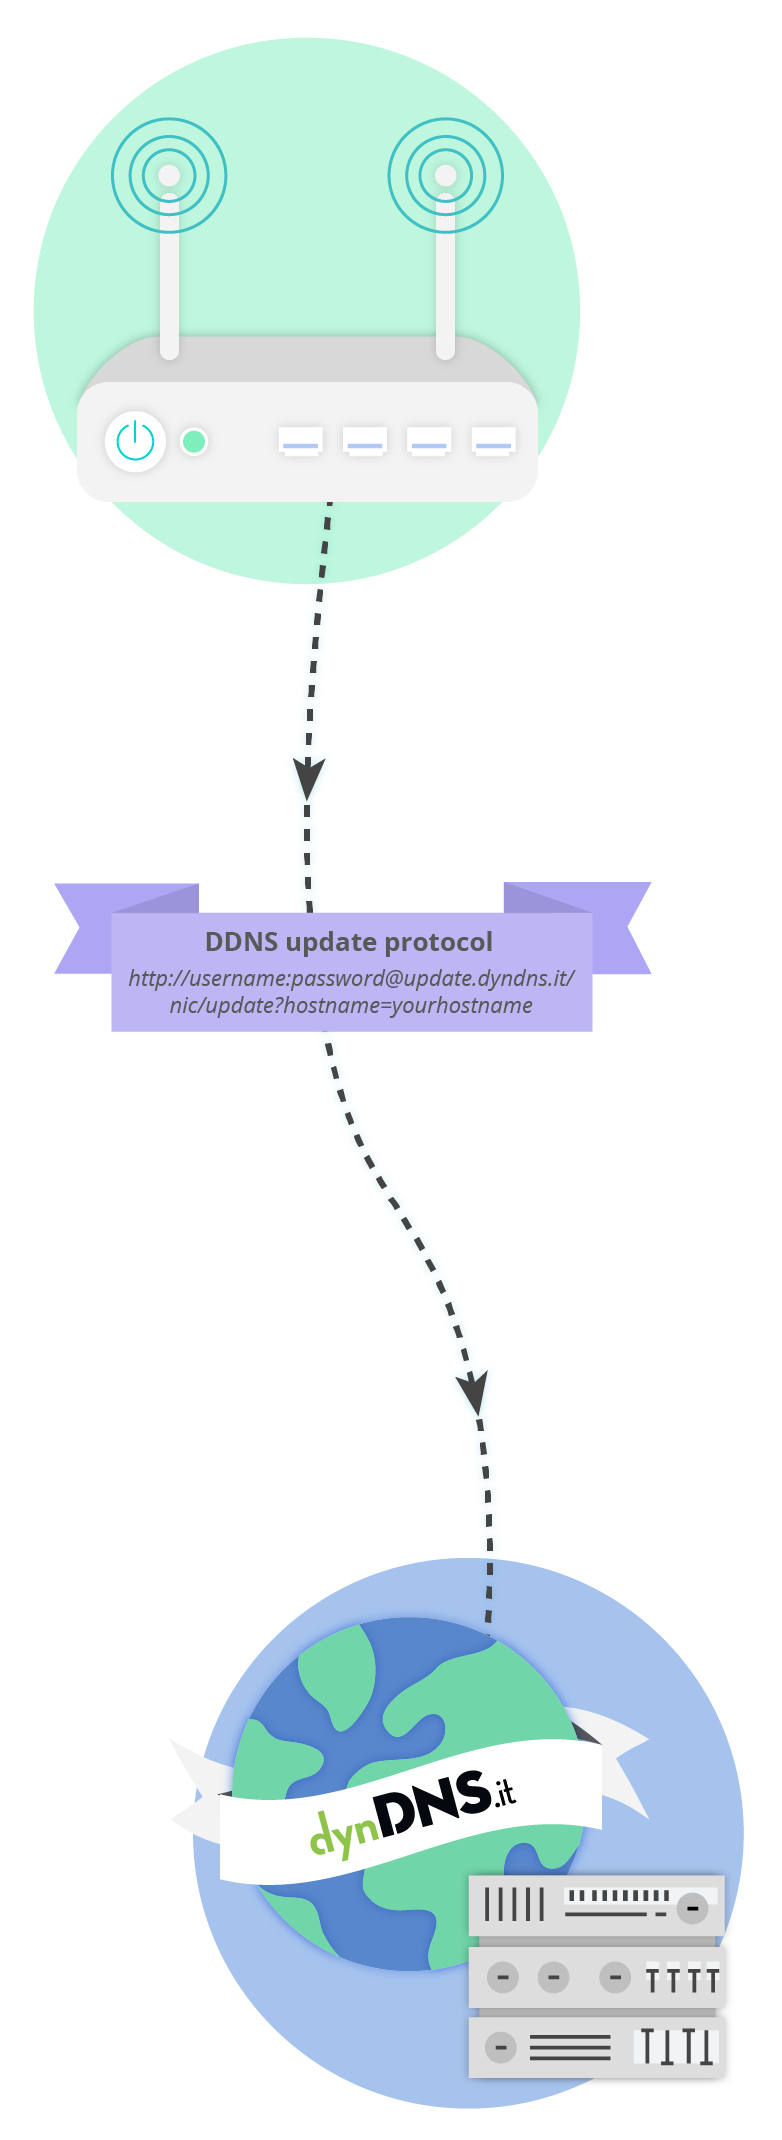 Protocollo di aggiornamento DDNS - Documentazione - dynDNS.it - DNS dinamico gratuito - Free dyndns